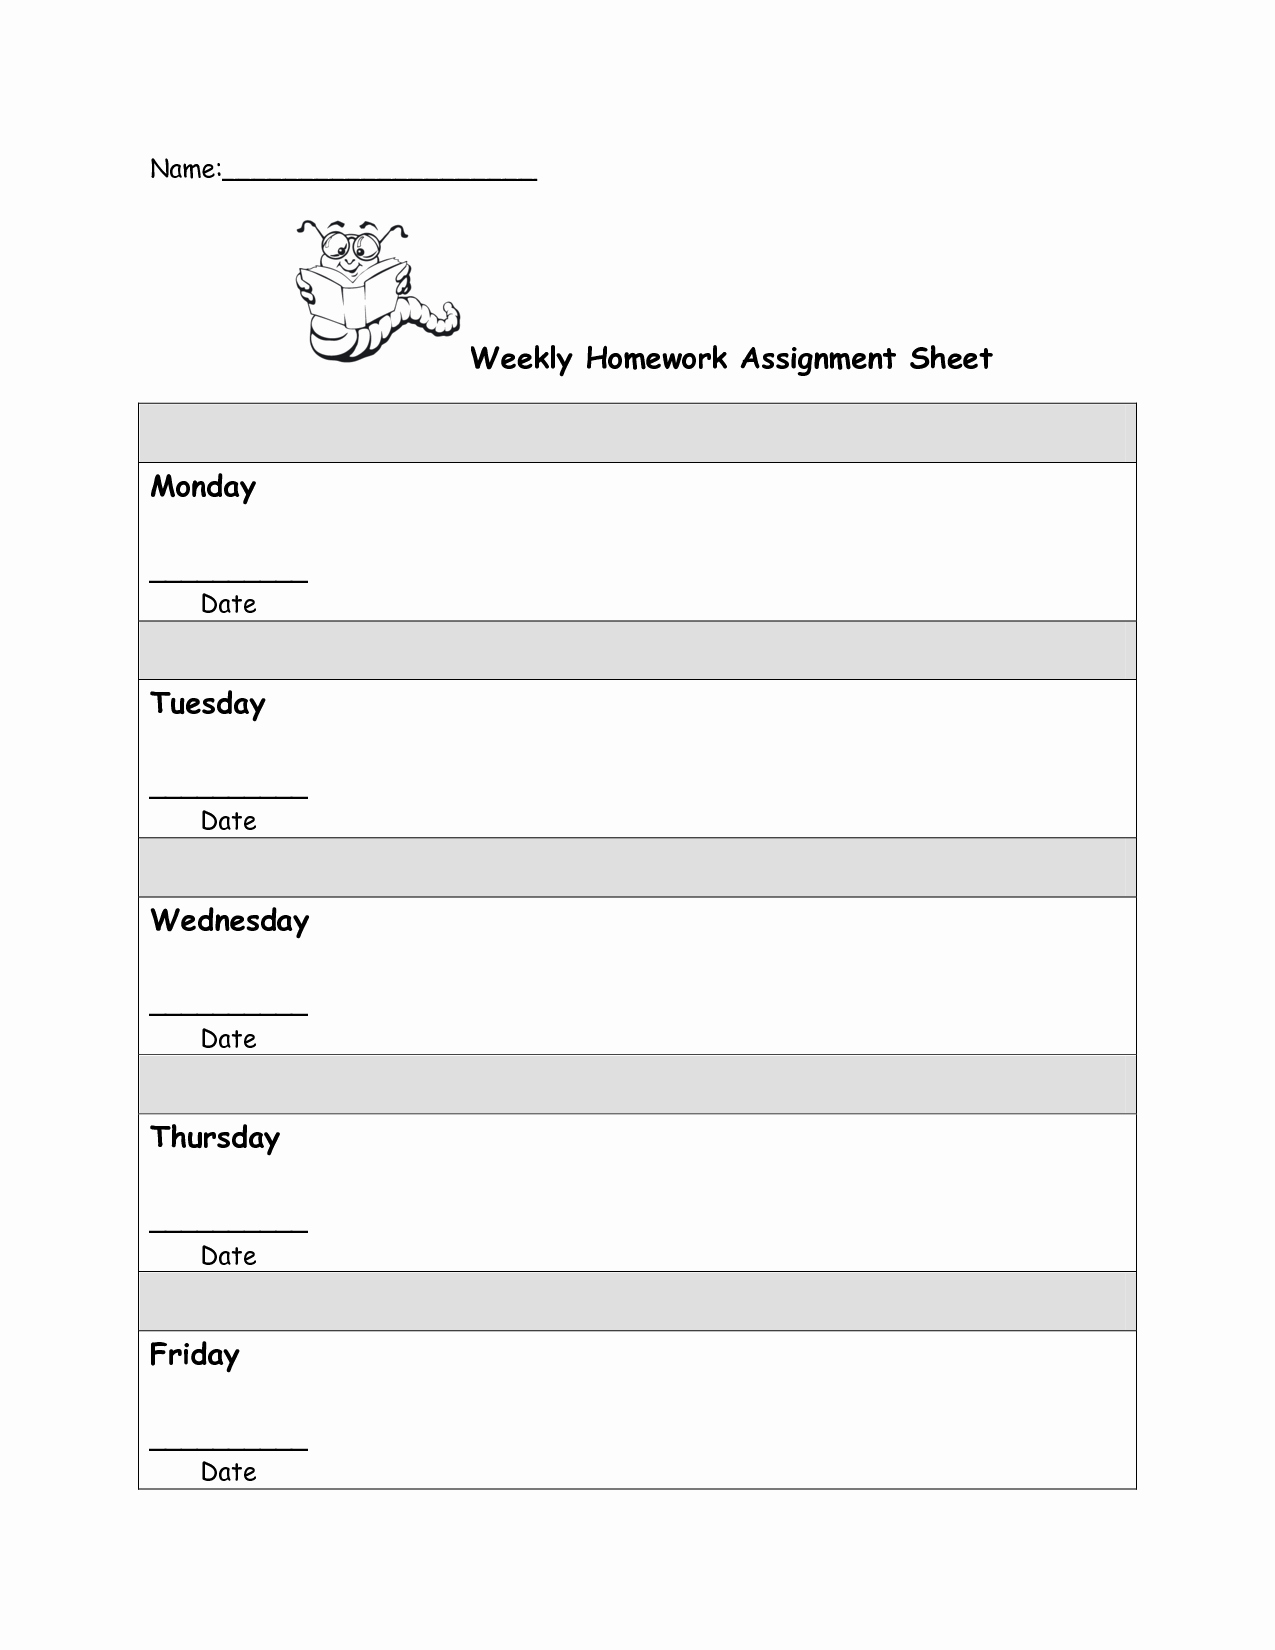 Daily Homework assignment Sheet Template Beautiful 8 Best Of Student Homework Sheet Template Printable